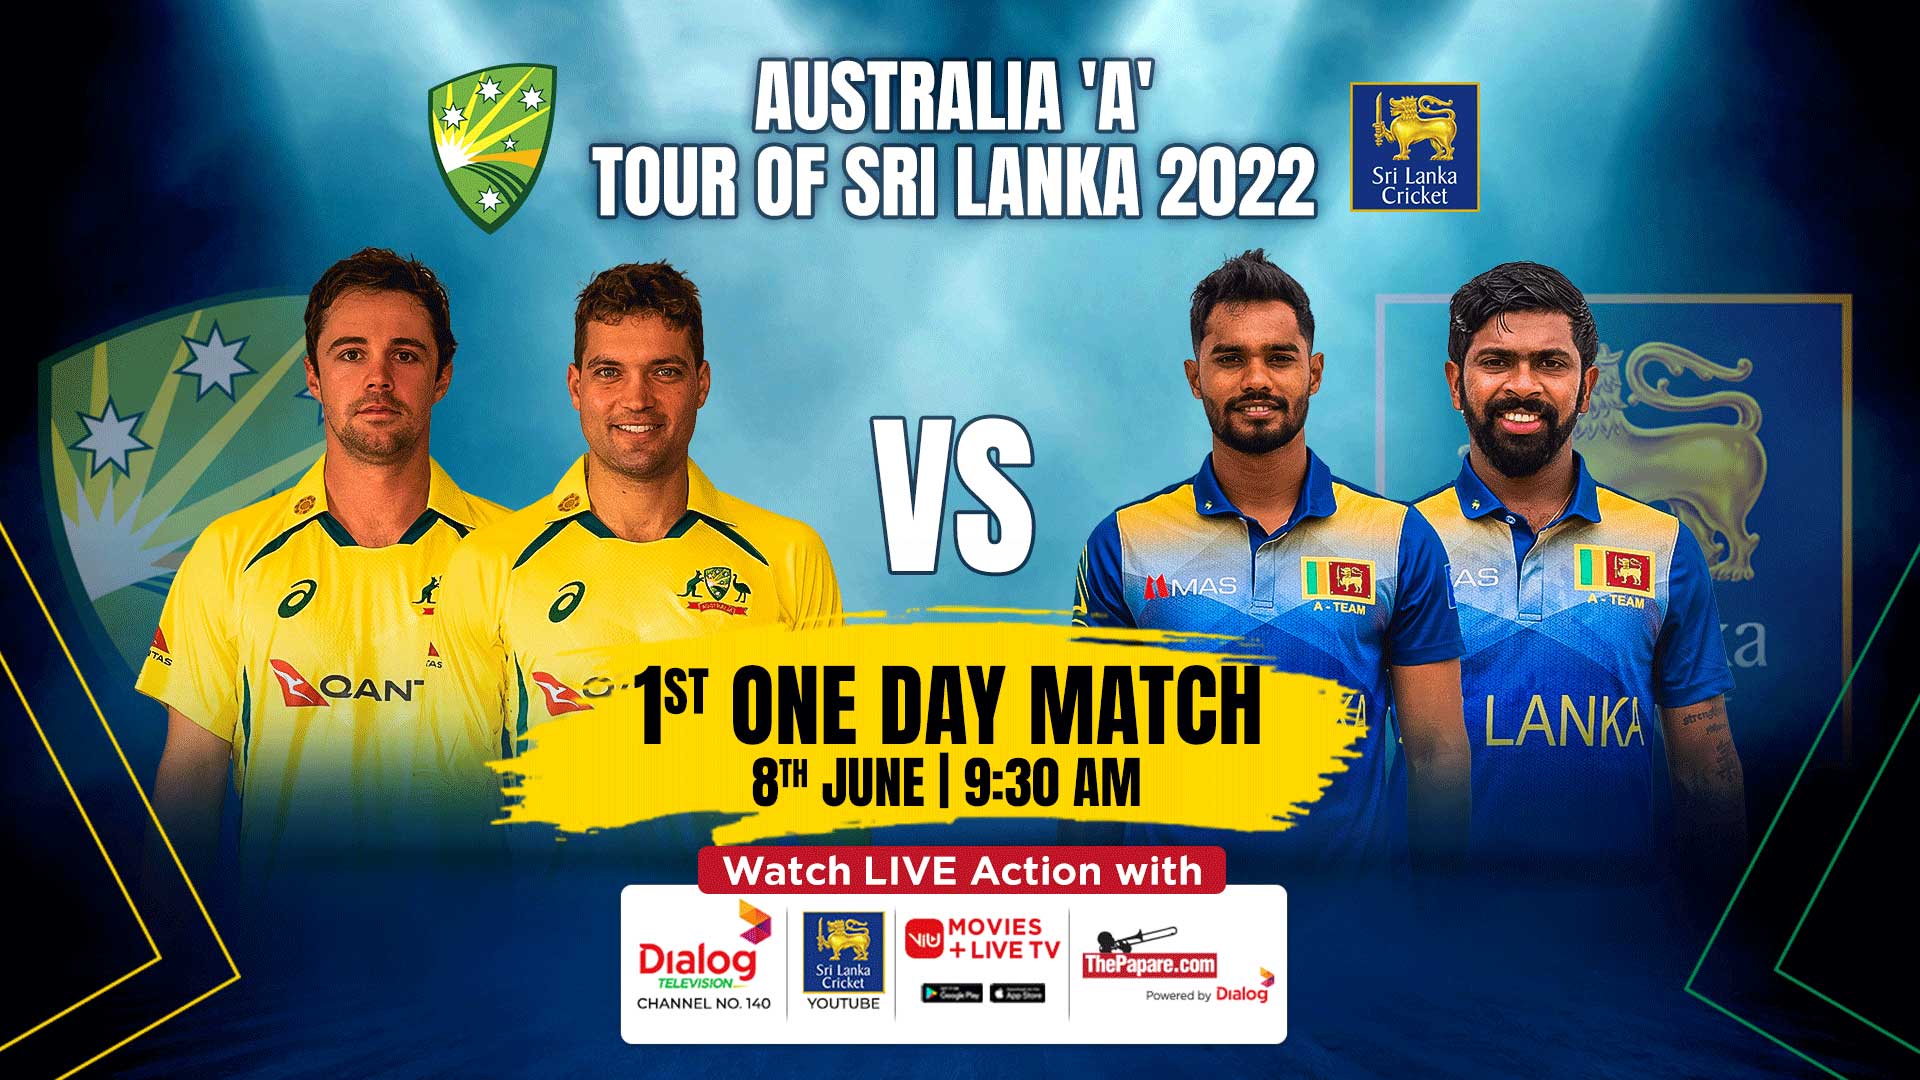 REPLAY - Australia A tour of Sri Lanka 2022